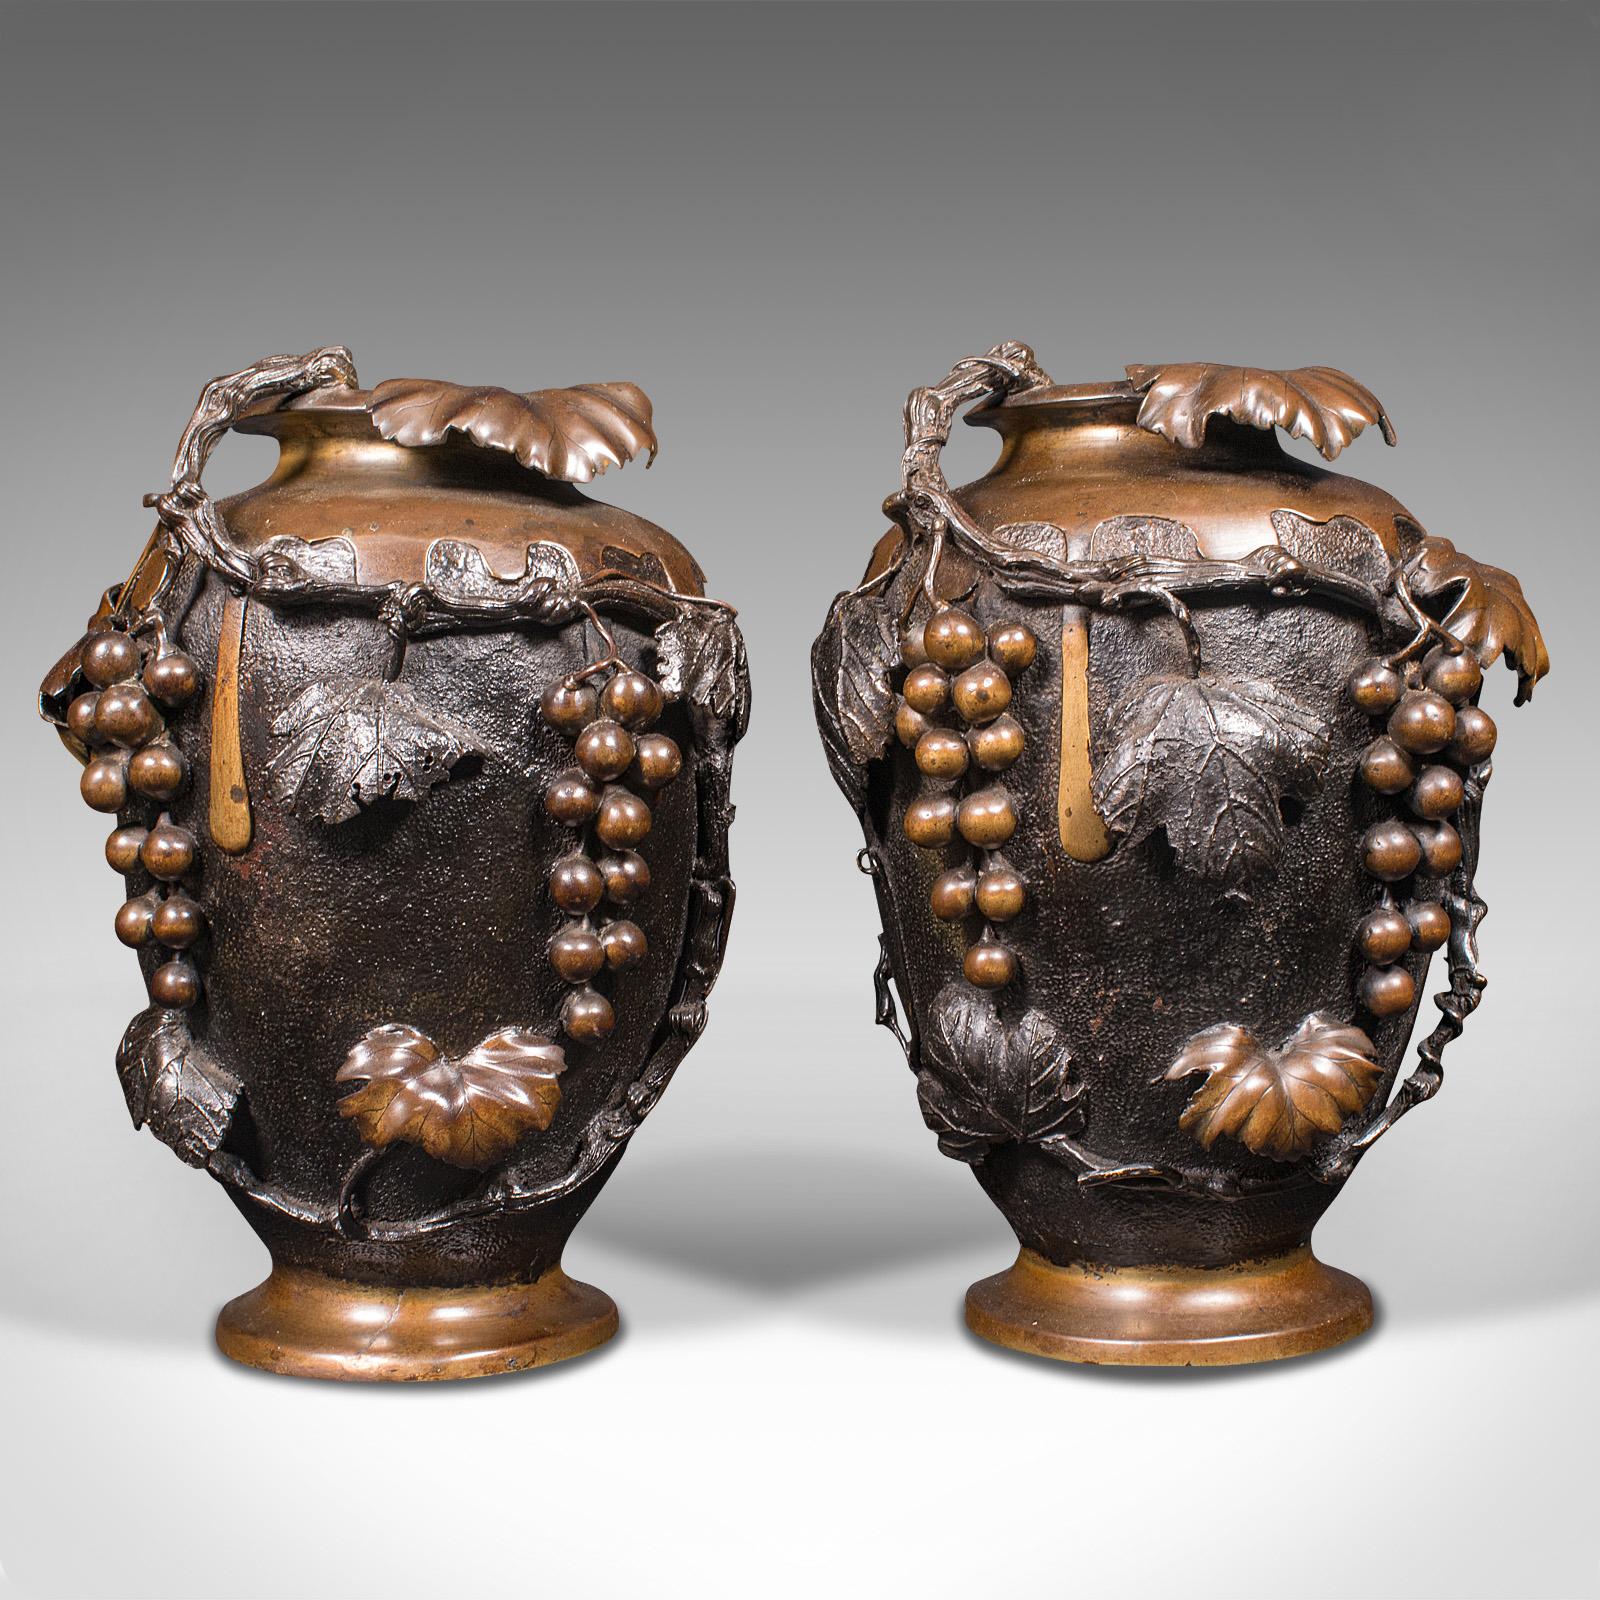 Dies ist ein großes Paar von antiken dekorativen Vasen. Eine japanische Bronzeamphore oder -urne aus der späten viktorianischen Zeit um 1900.

Auffallend geformte und bearbeitete Vasen von großer Größe
Zeigt eine wünschenswerte gealterte Patina